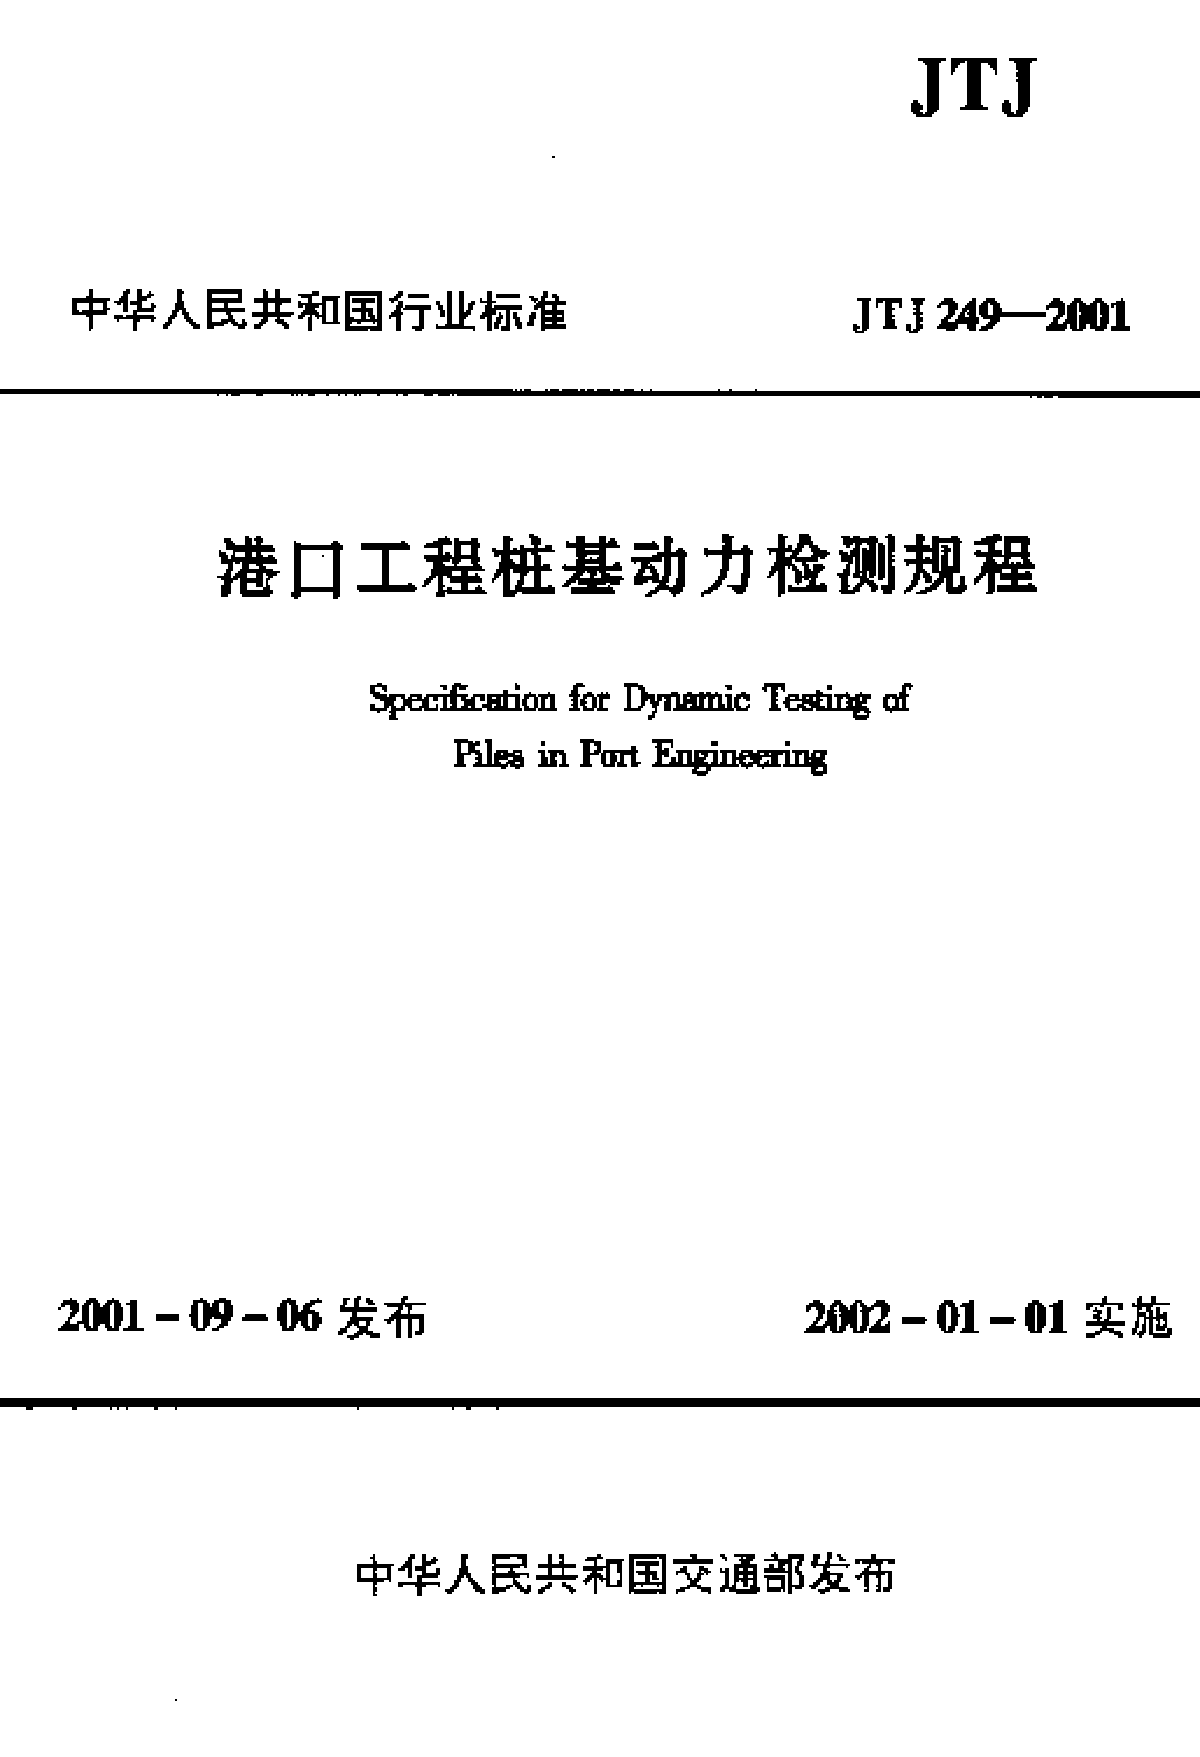 《港口工程桩基动力检测规程》(JTJ 249-2001) -图一